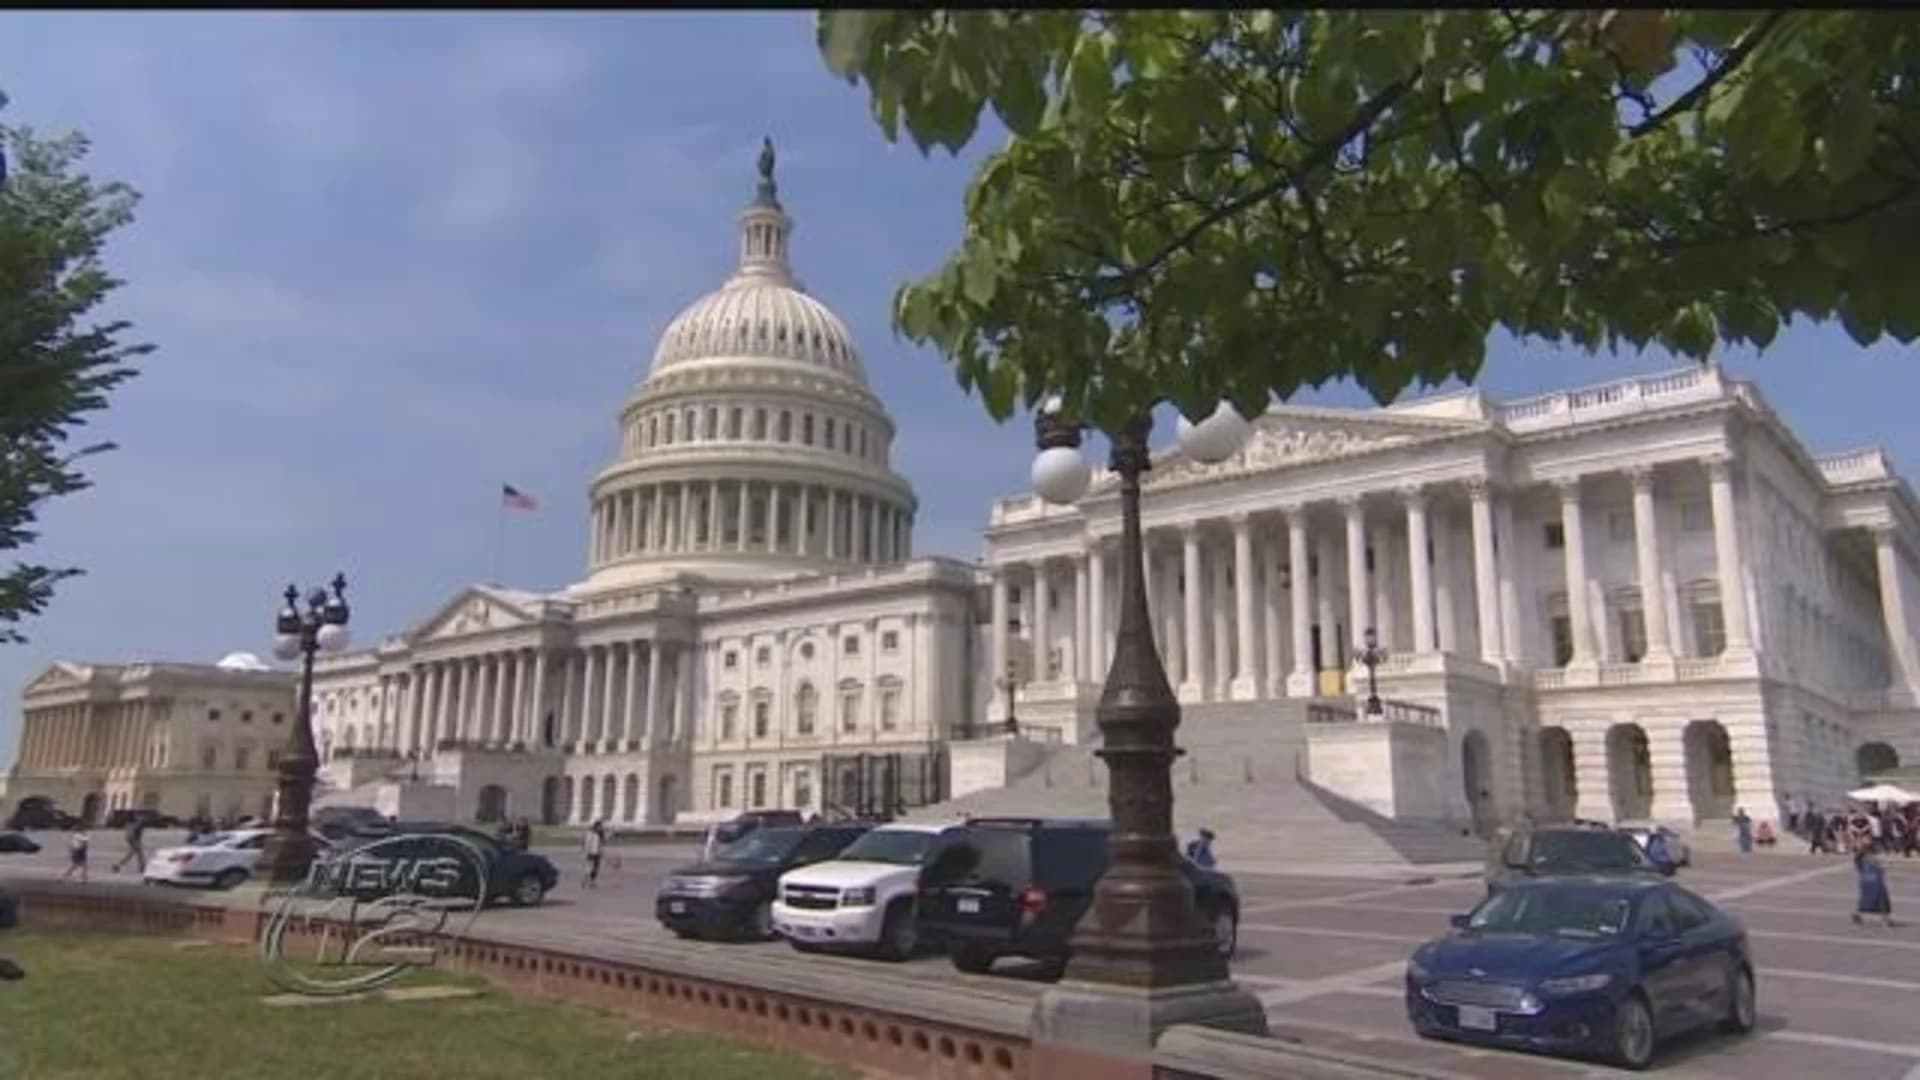 Senate GOP leaders hope for health care vote next week